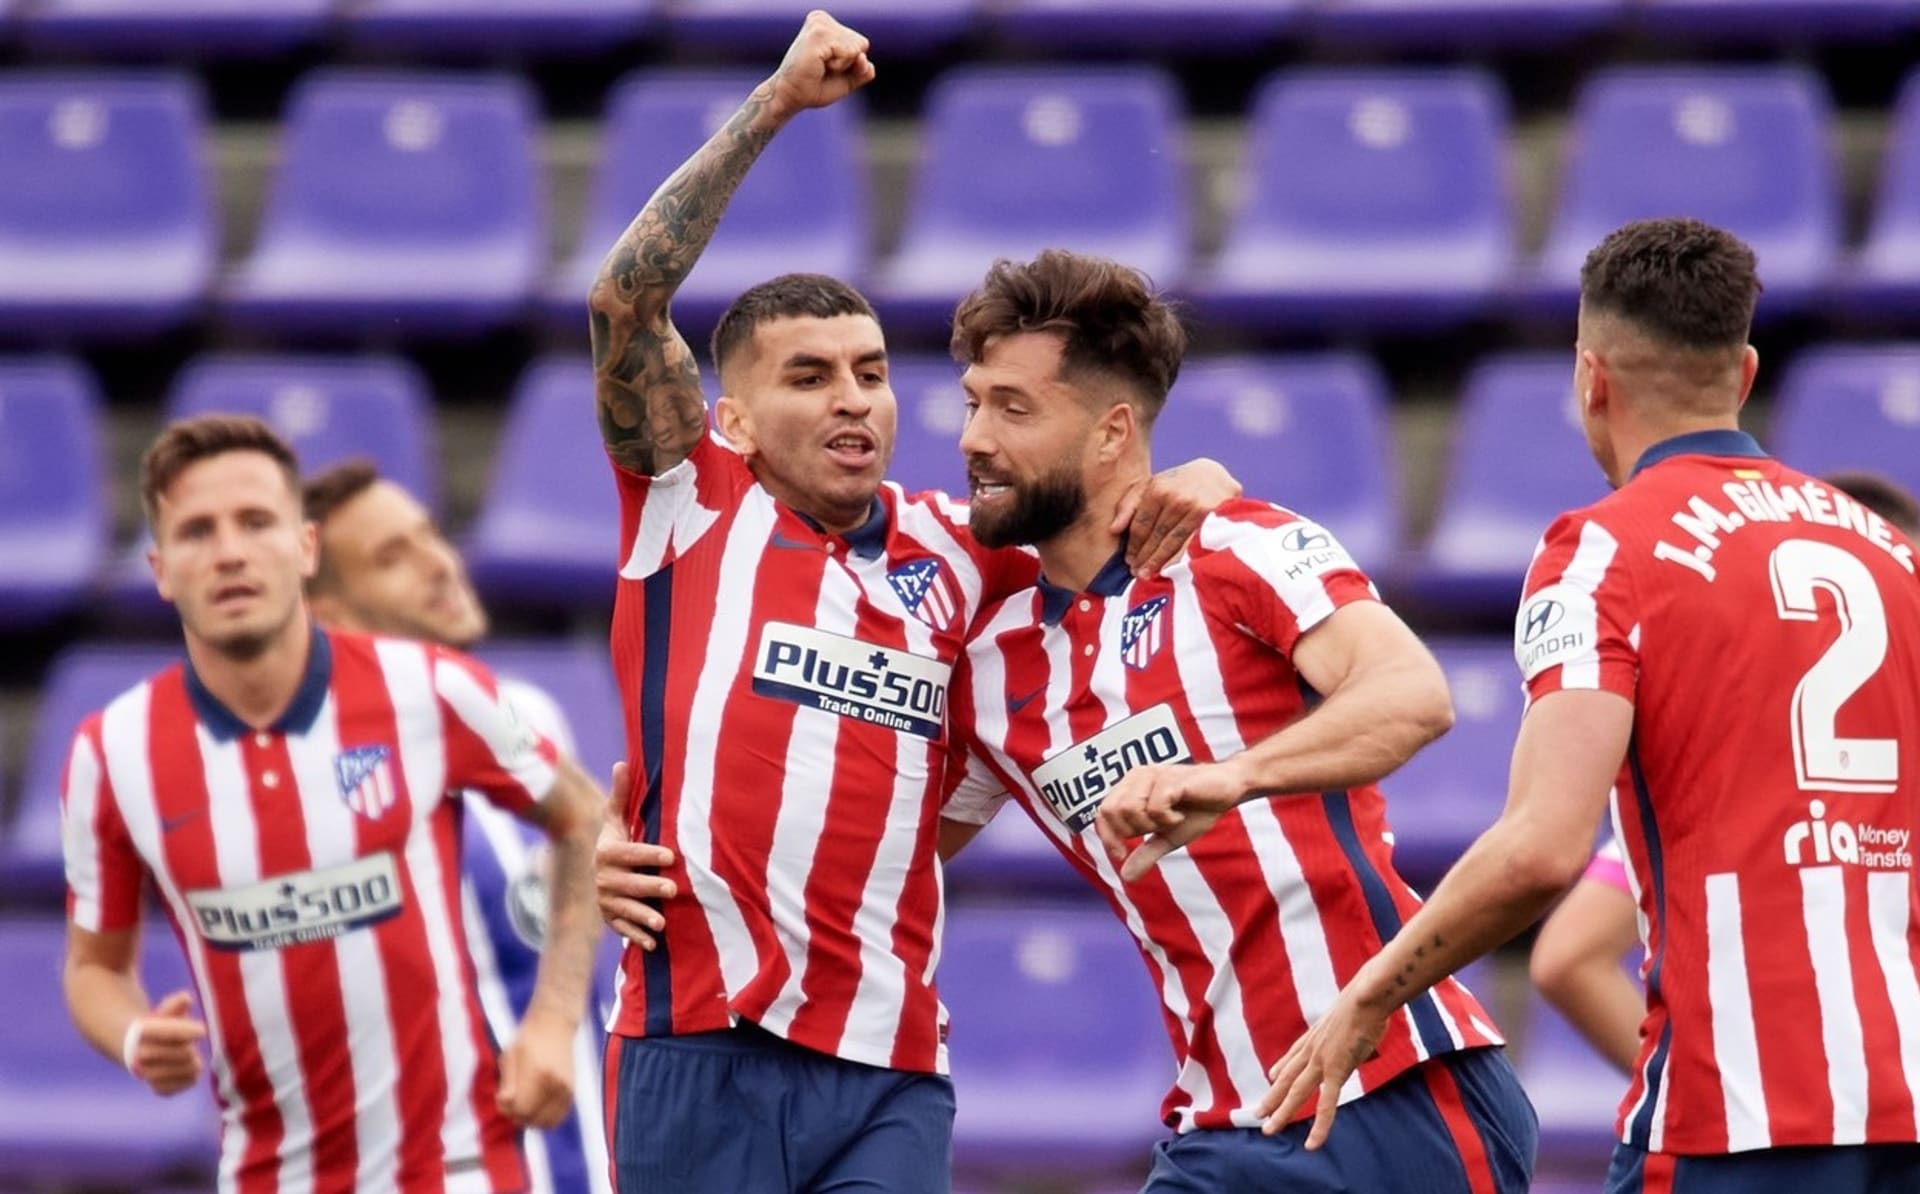 Atlético Madrid vyhrálo po sedmi letech titul ve španělské La Lize. Ze svého gólu proti Valladolidu se raduje Angel Correa (druhý zleva).